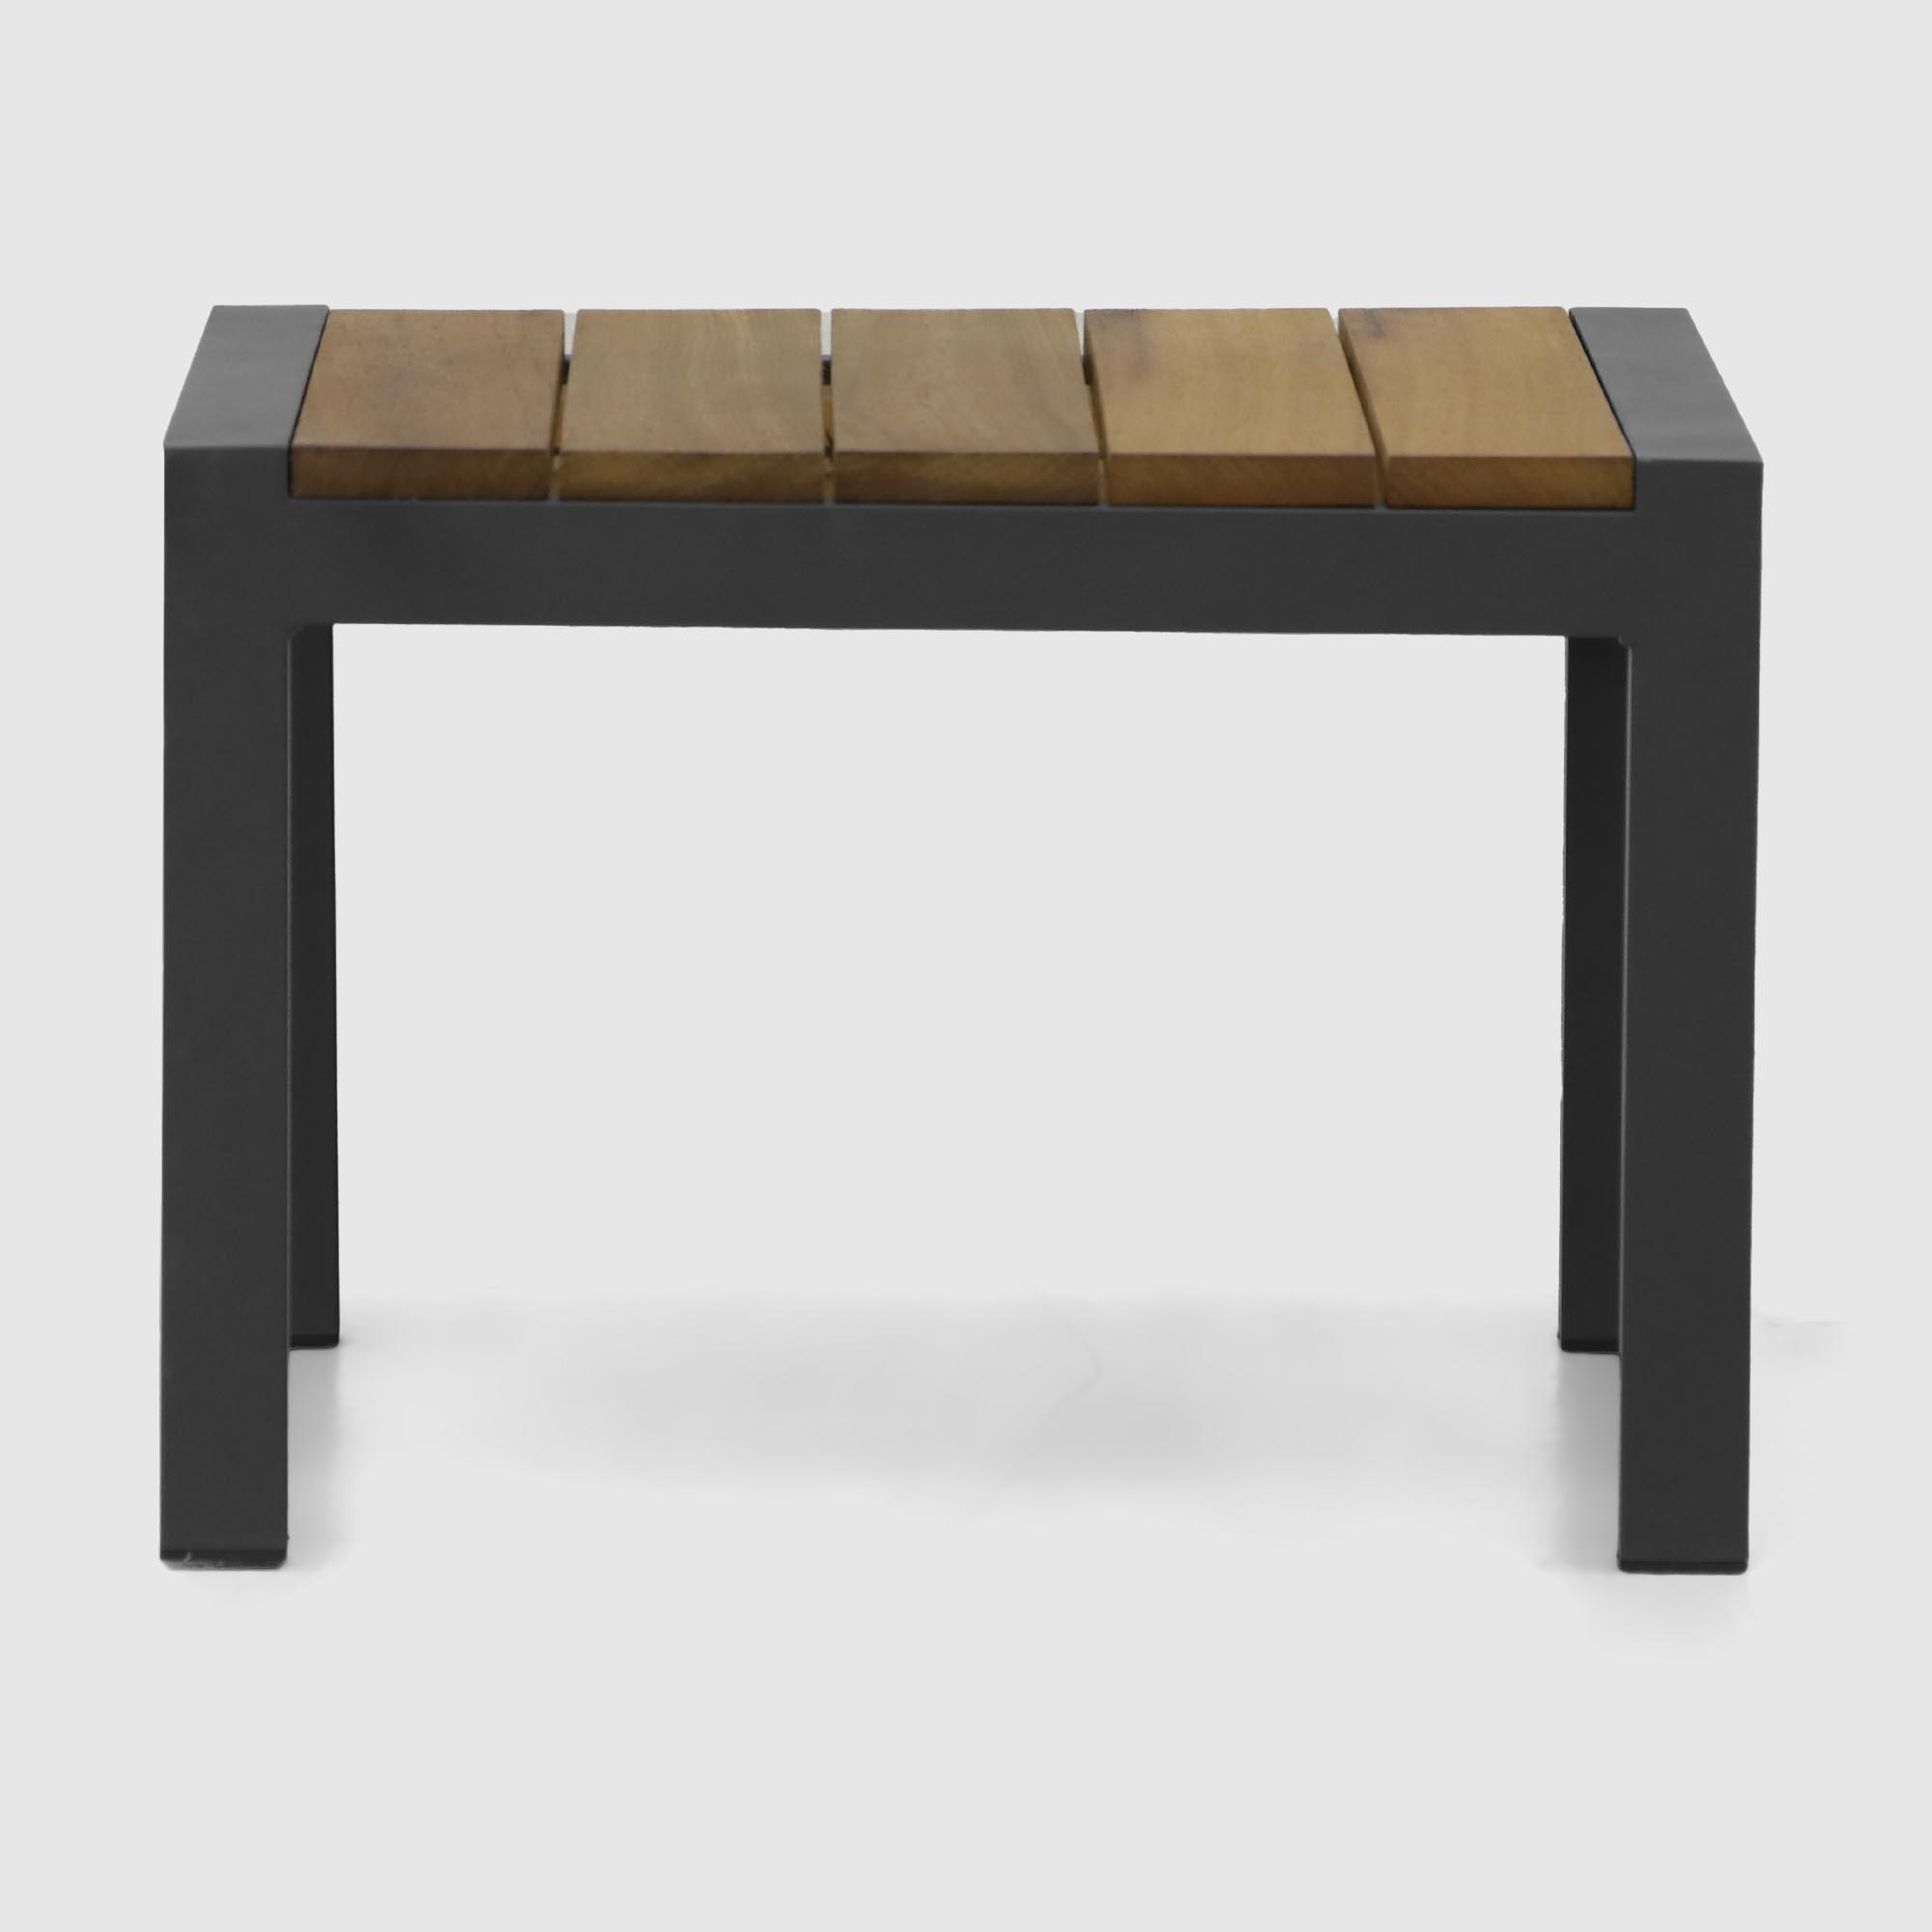 Комплект мебели Emek garden столик и два шезлонга 3 предмета, цвет черный - фото 6